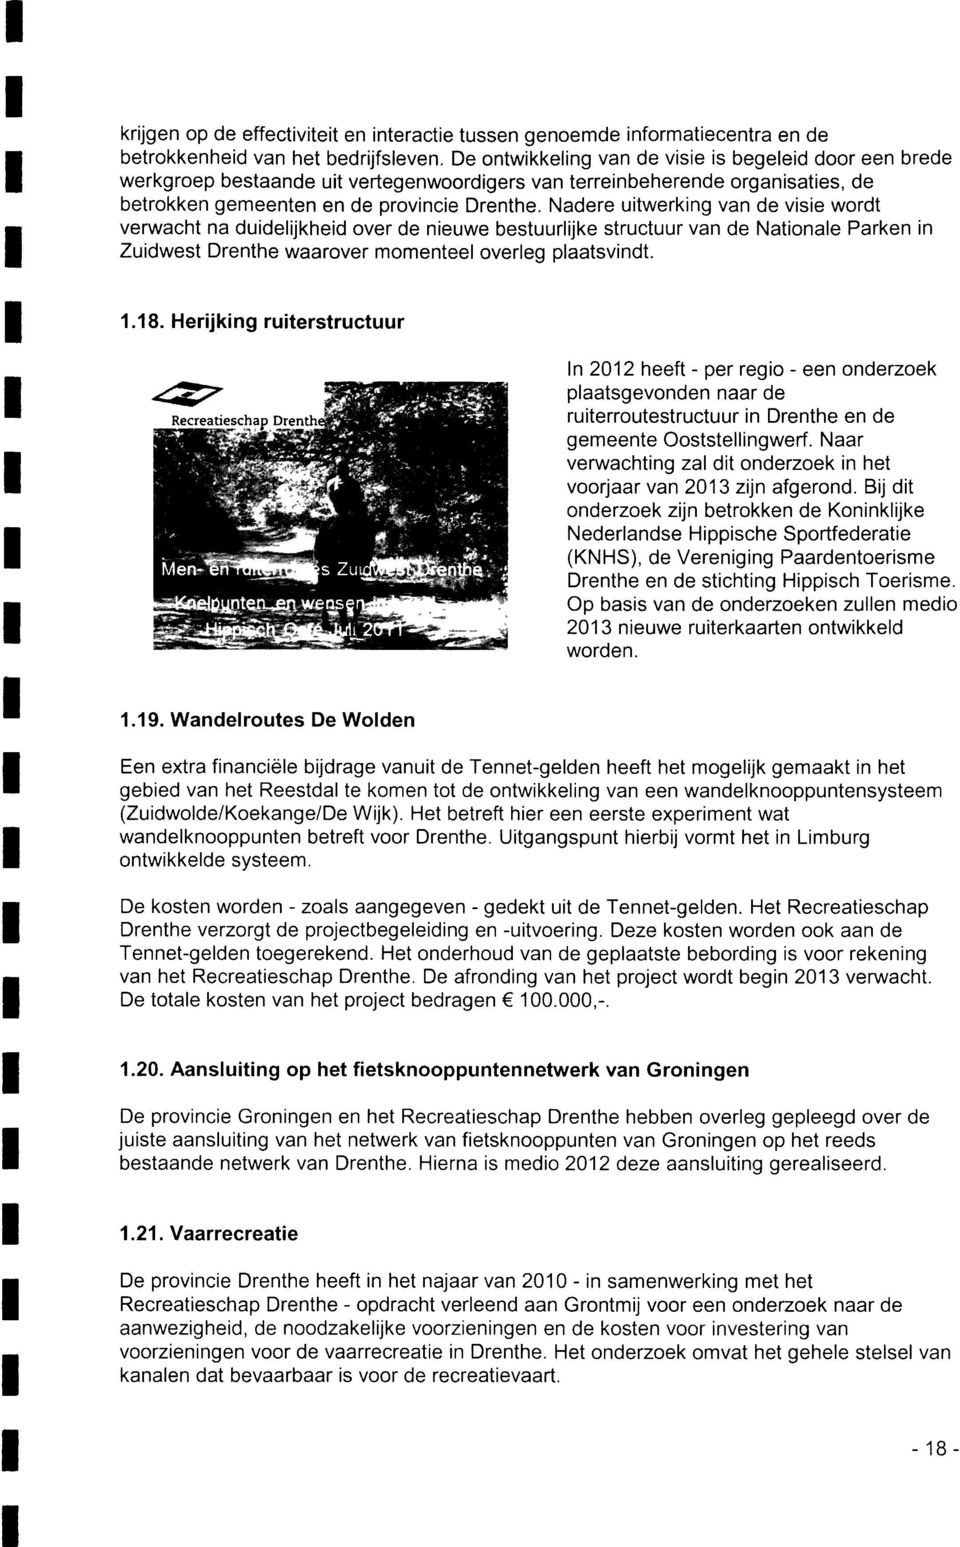 Nadere uitwerking van de visie wordt verwacht na duidelijkheid over de nieuwe bestuurlijke structuur van de Nationale Parken in Zuidwest Drenthe waarover momenteel overleg plaatsvindt. 1.18.